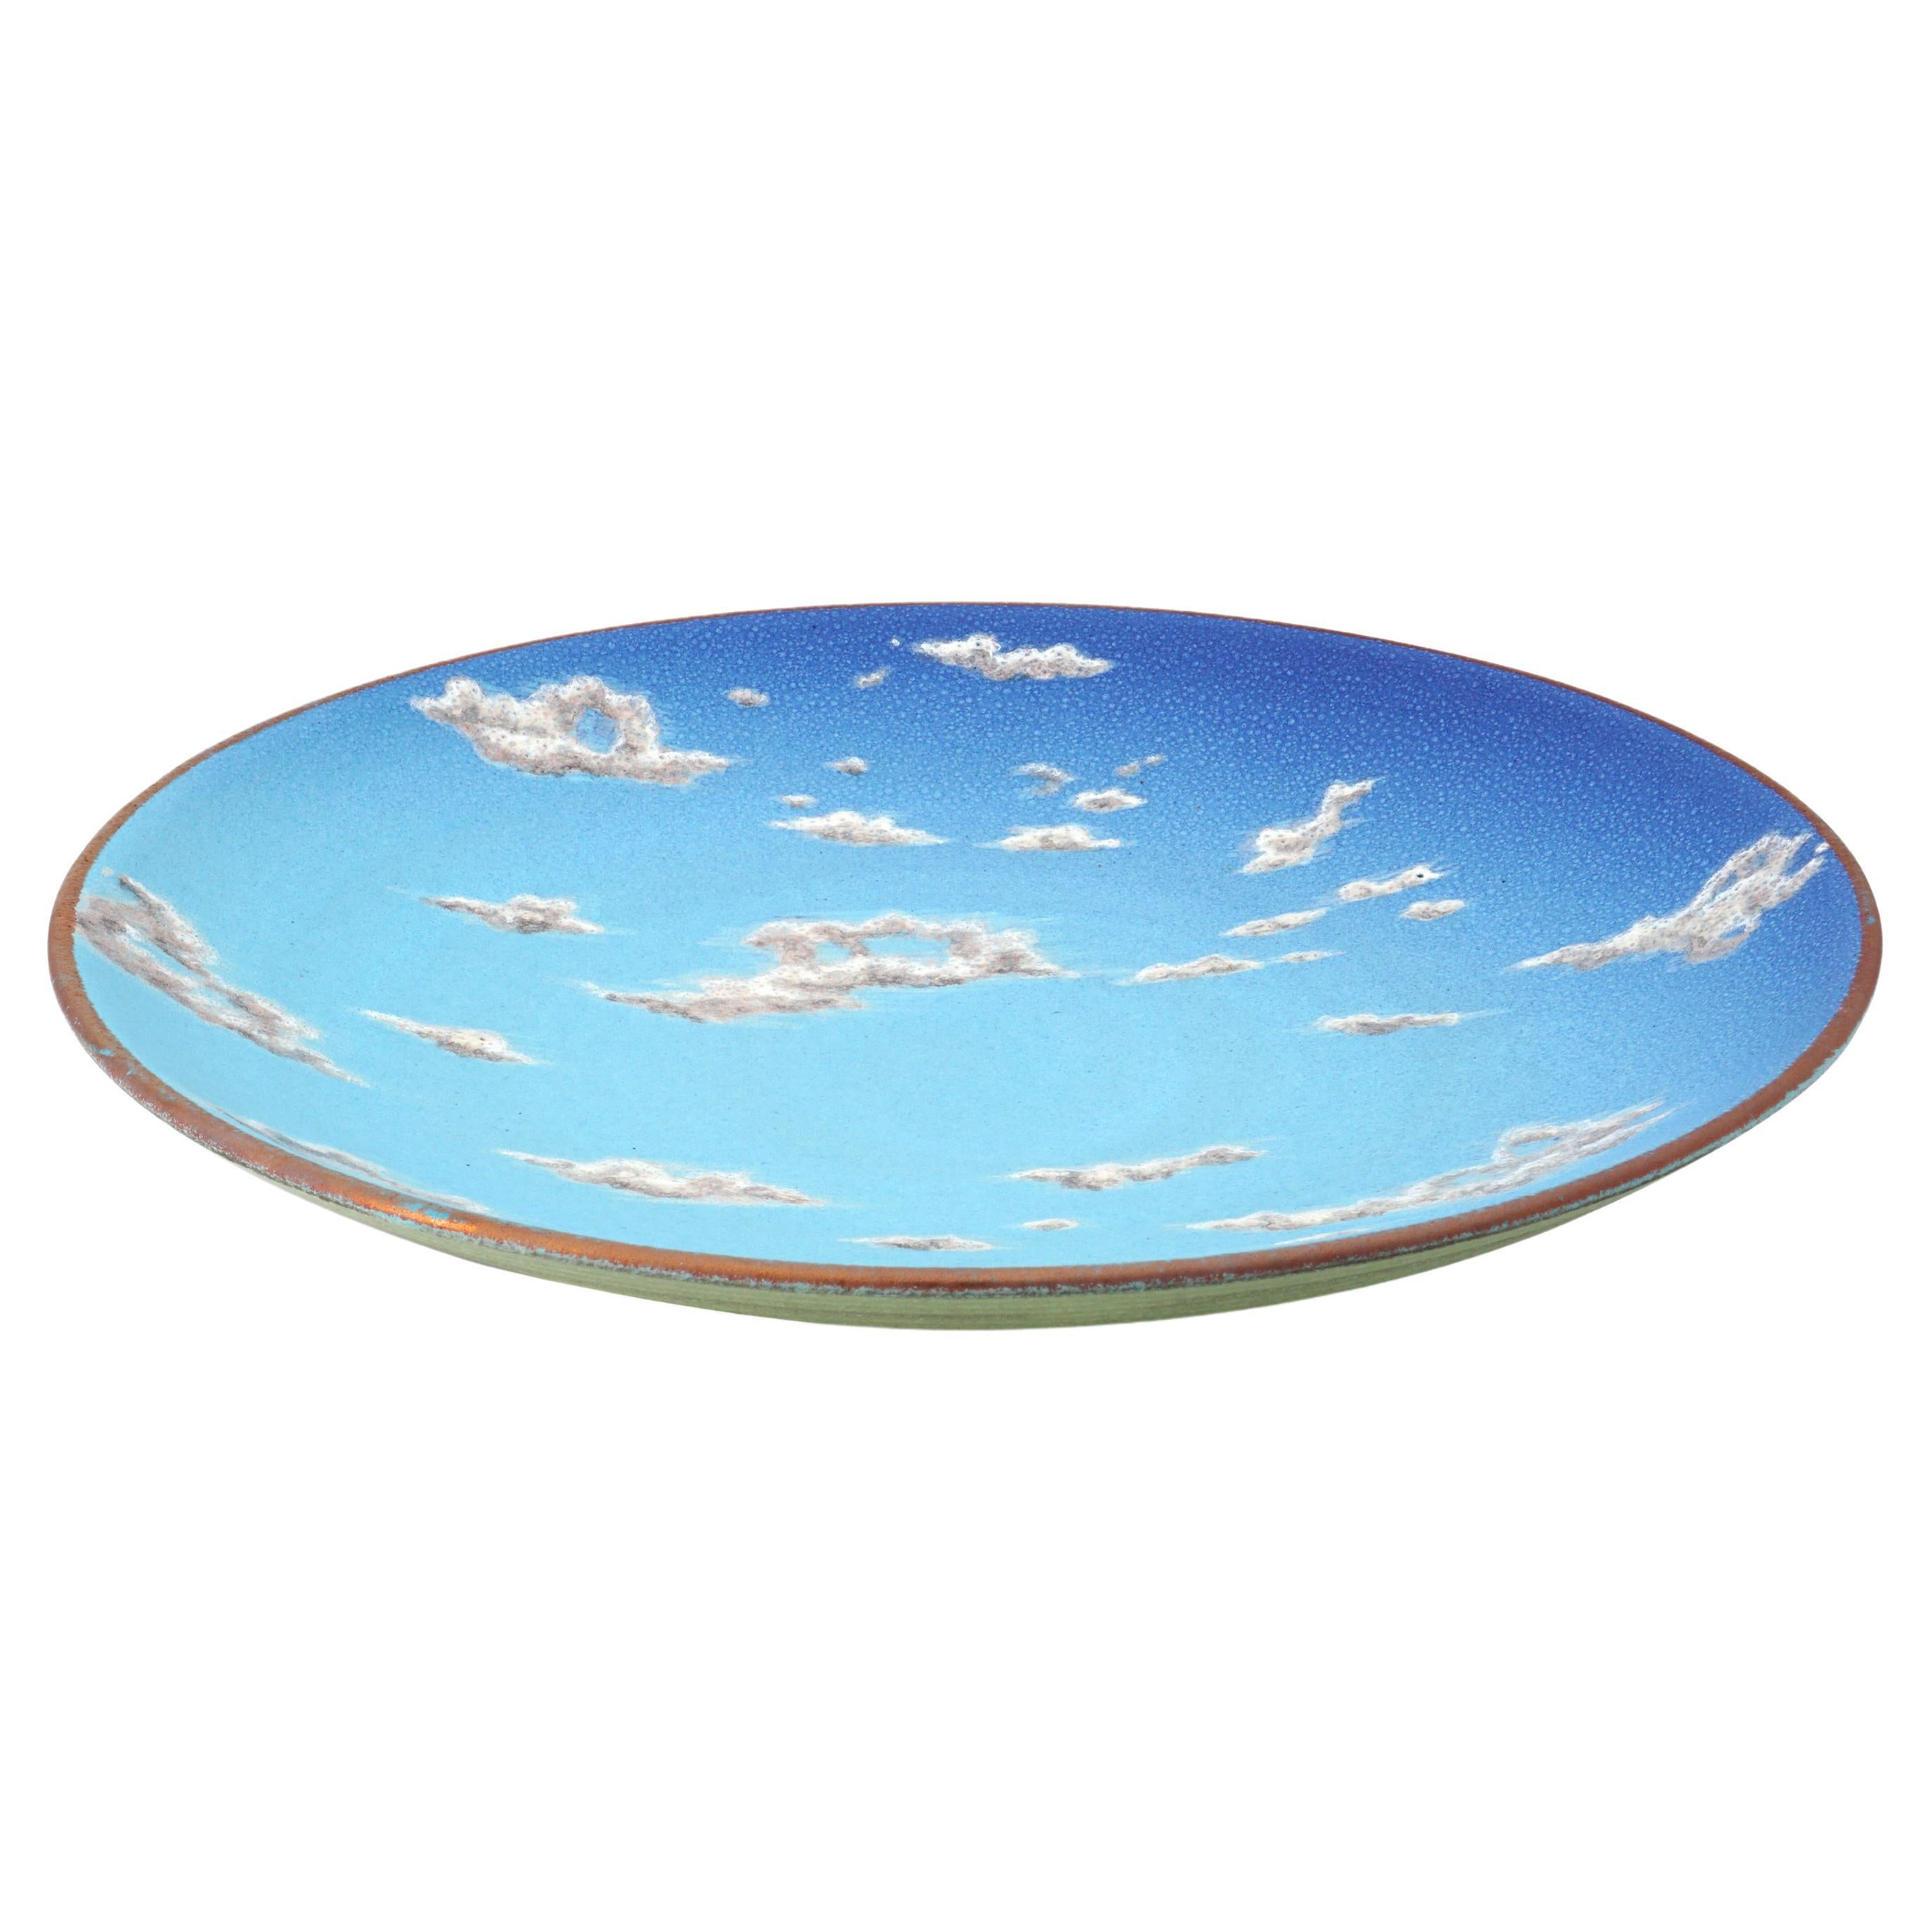 Grand bol en céramique ciel peint à la main, majolique émaillée italienne contemporaine